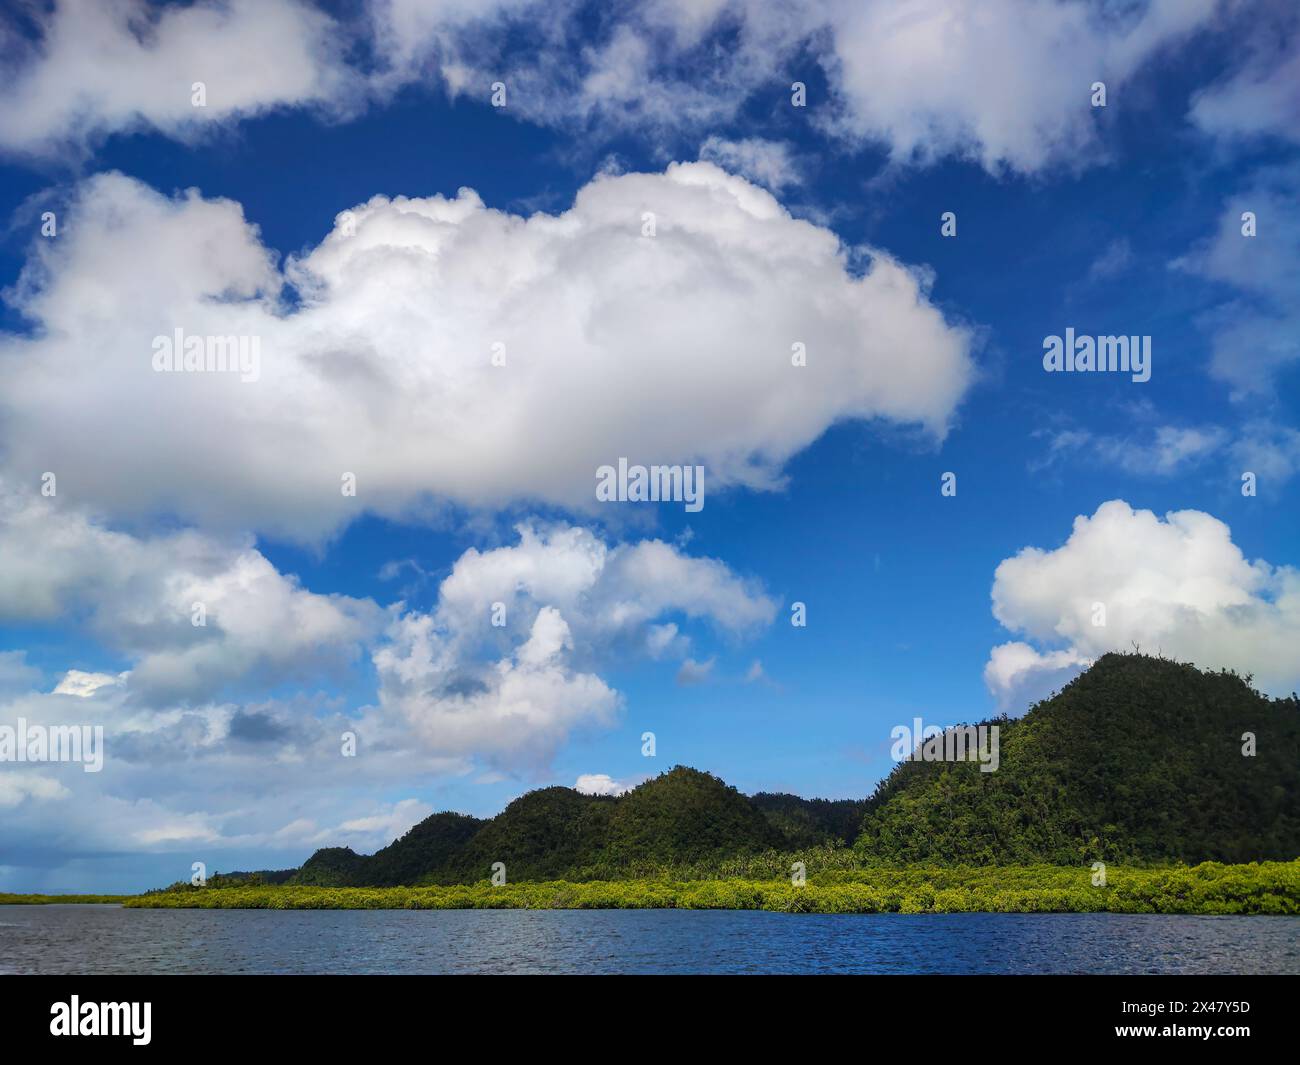 Une scène sereine et pittoresque des éléments naturels - terre, ciel et eau - se réunissant dans une vue paisible et pittoresque. Banque D'Images